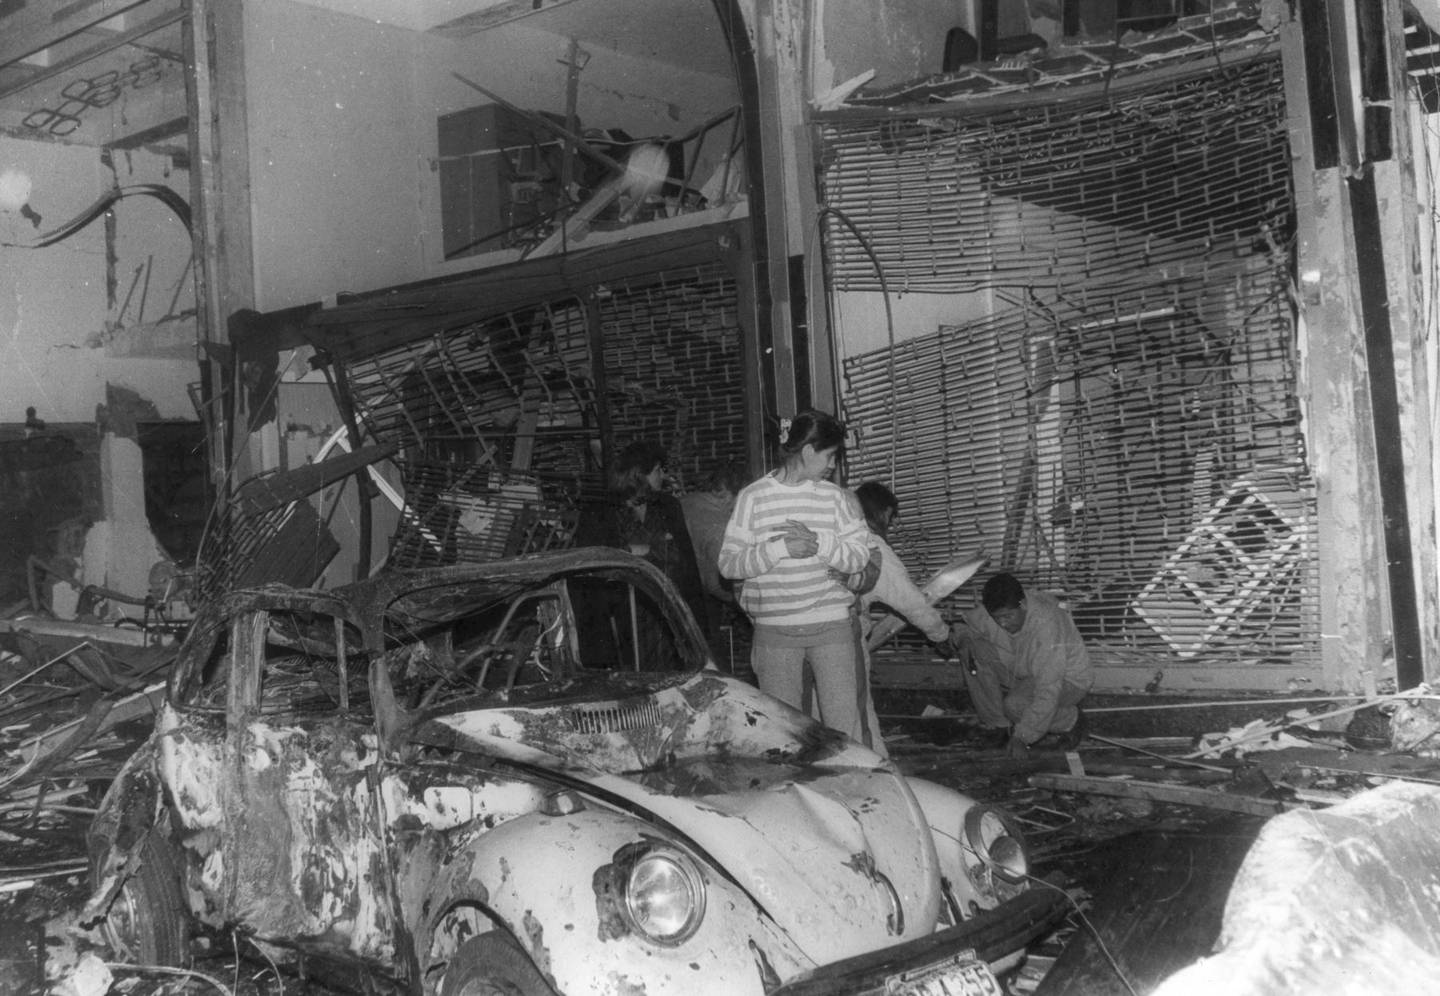 Una imagen del atentado en Tarata, Lima, perpetrado por Sendero Luminoso en julio de 1992. El ataque terrorista dejó un saldo de 25 muertos.dfd